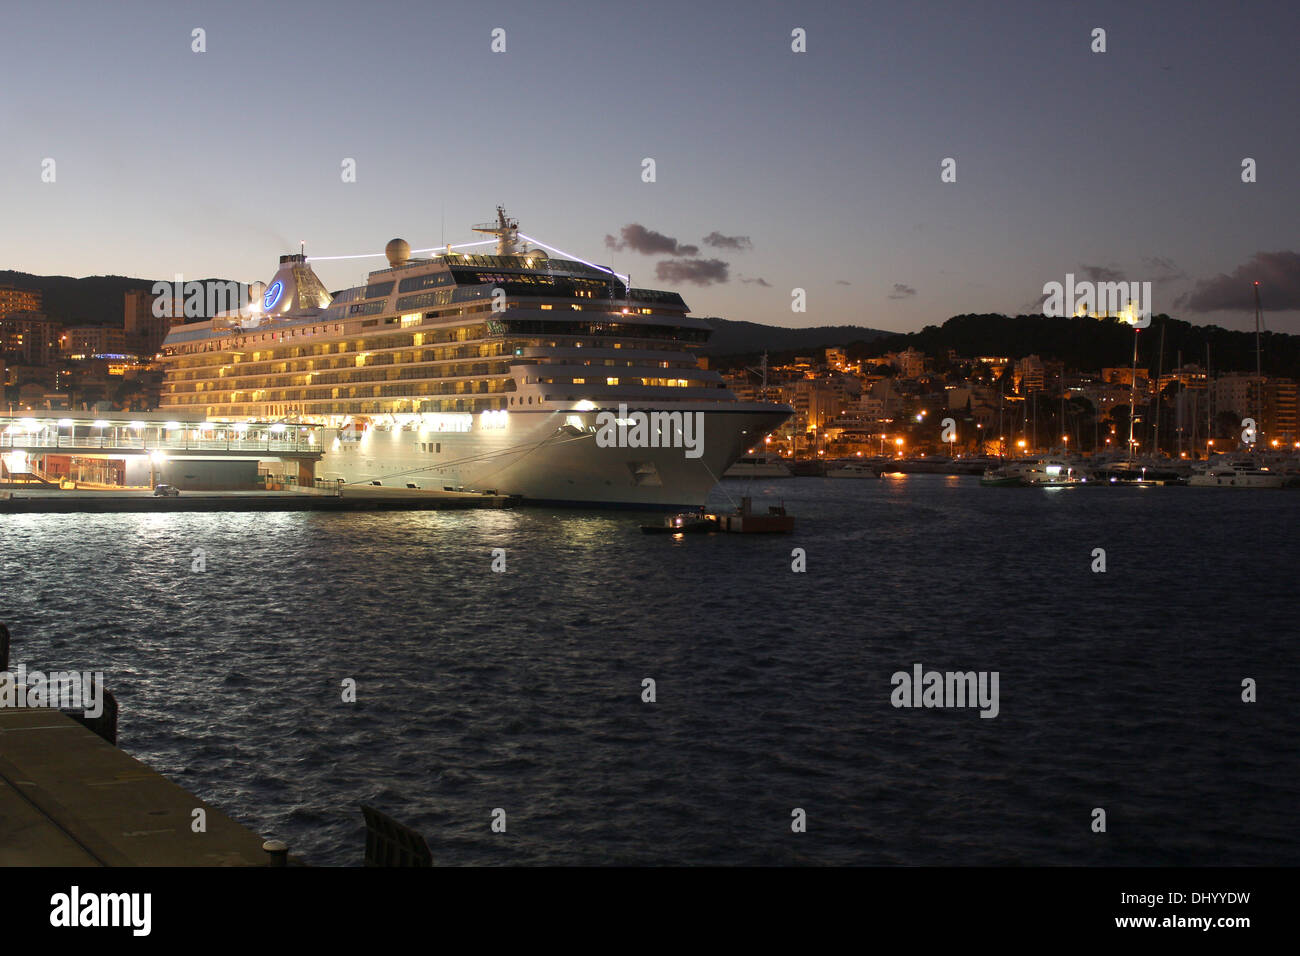 Oceania Cruises Cruise Ship 'MARINA' (238 m) sur le quai au crépuscule - avec le célèbre château de Belver, Palma de Mallorca. Banque D'Images